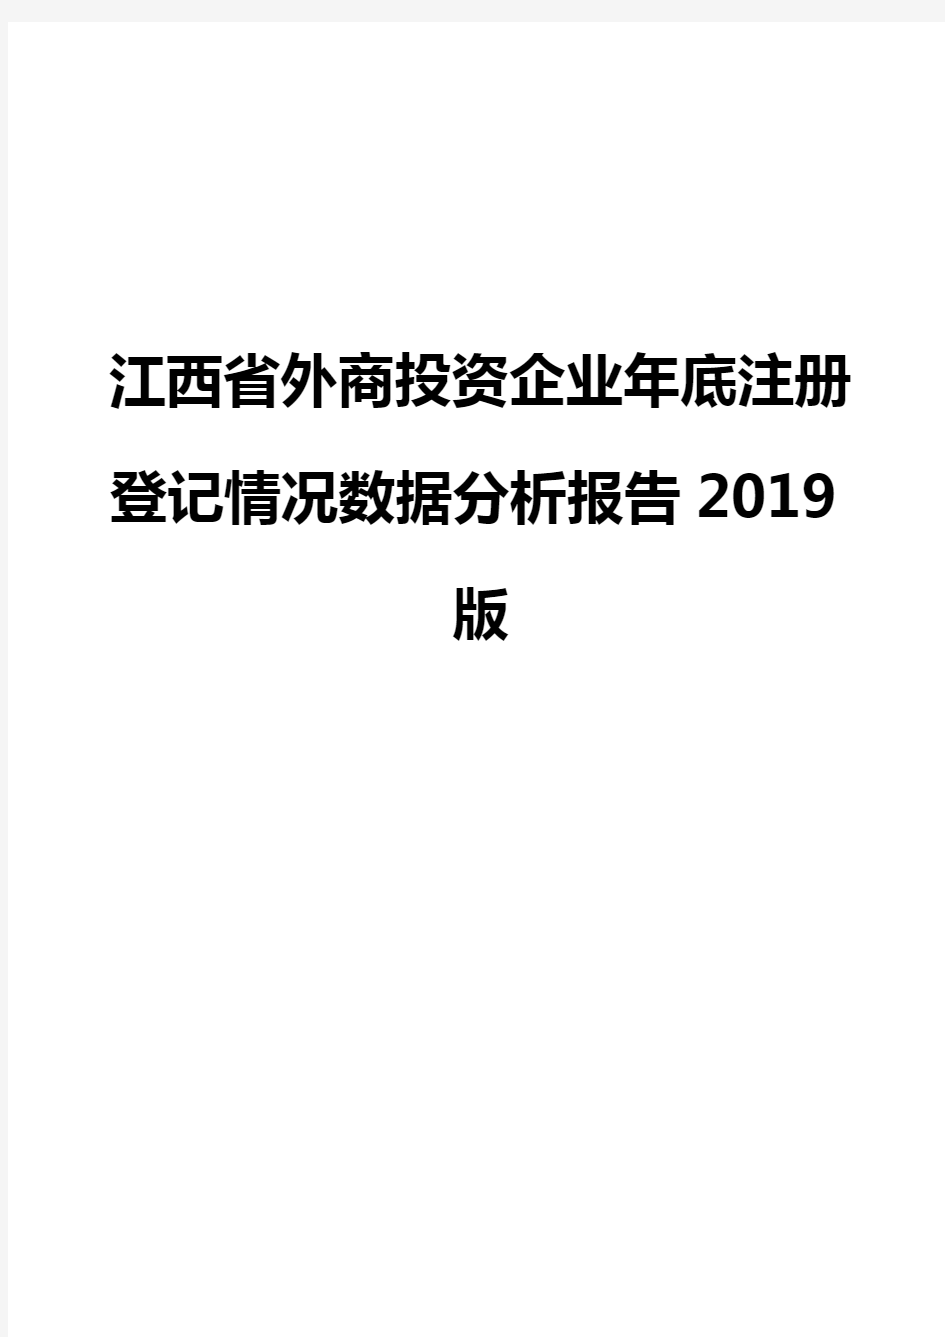 江西省外商投资企业年底注册登记情况数据分析报告2019版